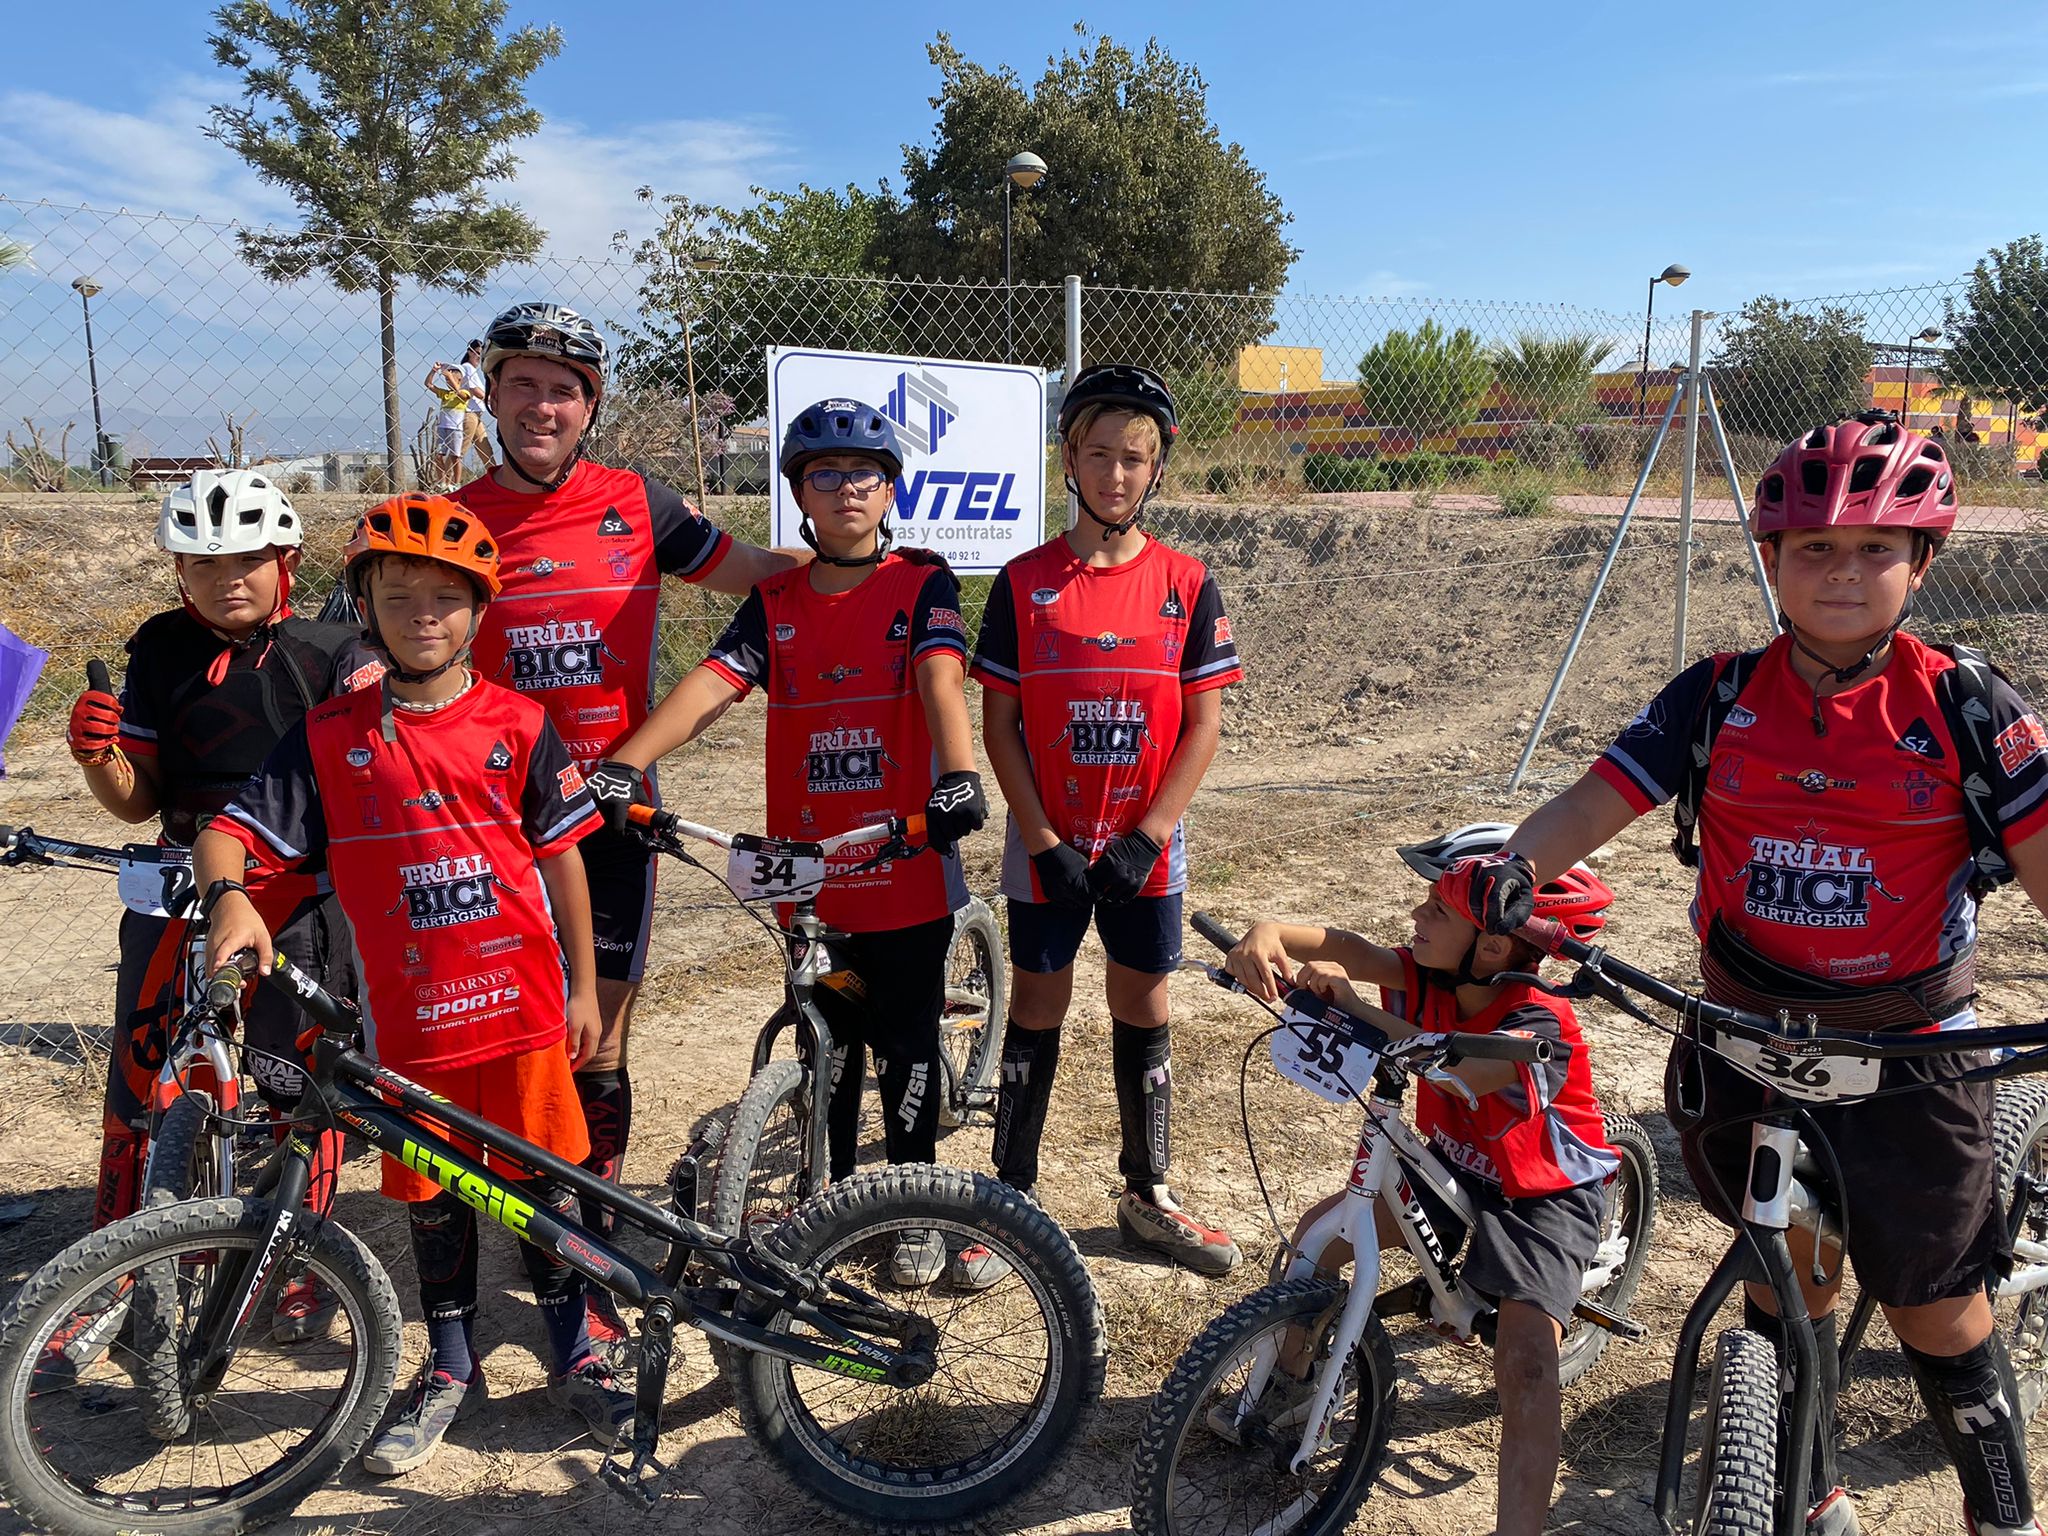 El Club Trial Bici Cartagena Sigue Imparable En El Campeonato Regional A Falta De Una Sola Prueba